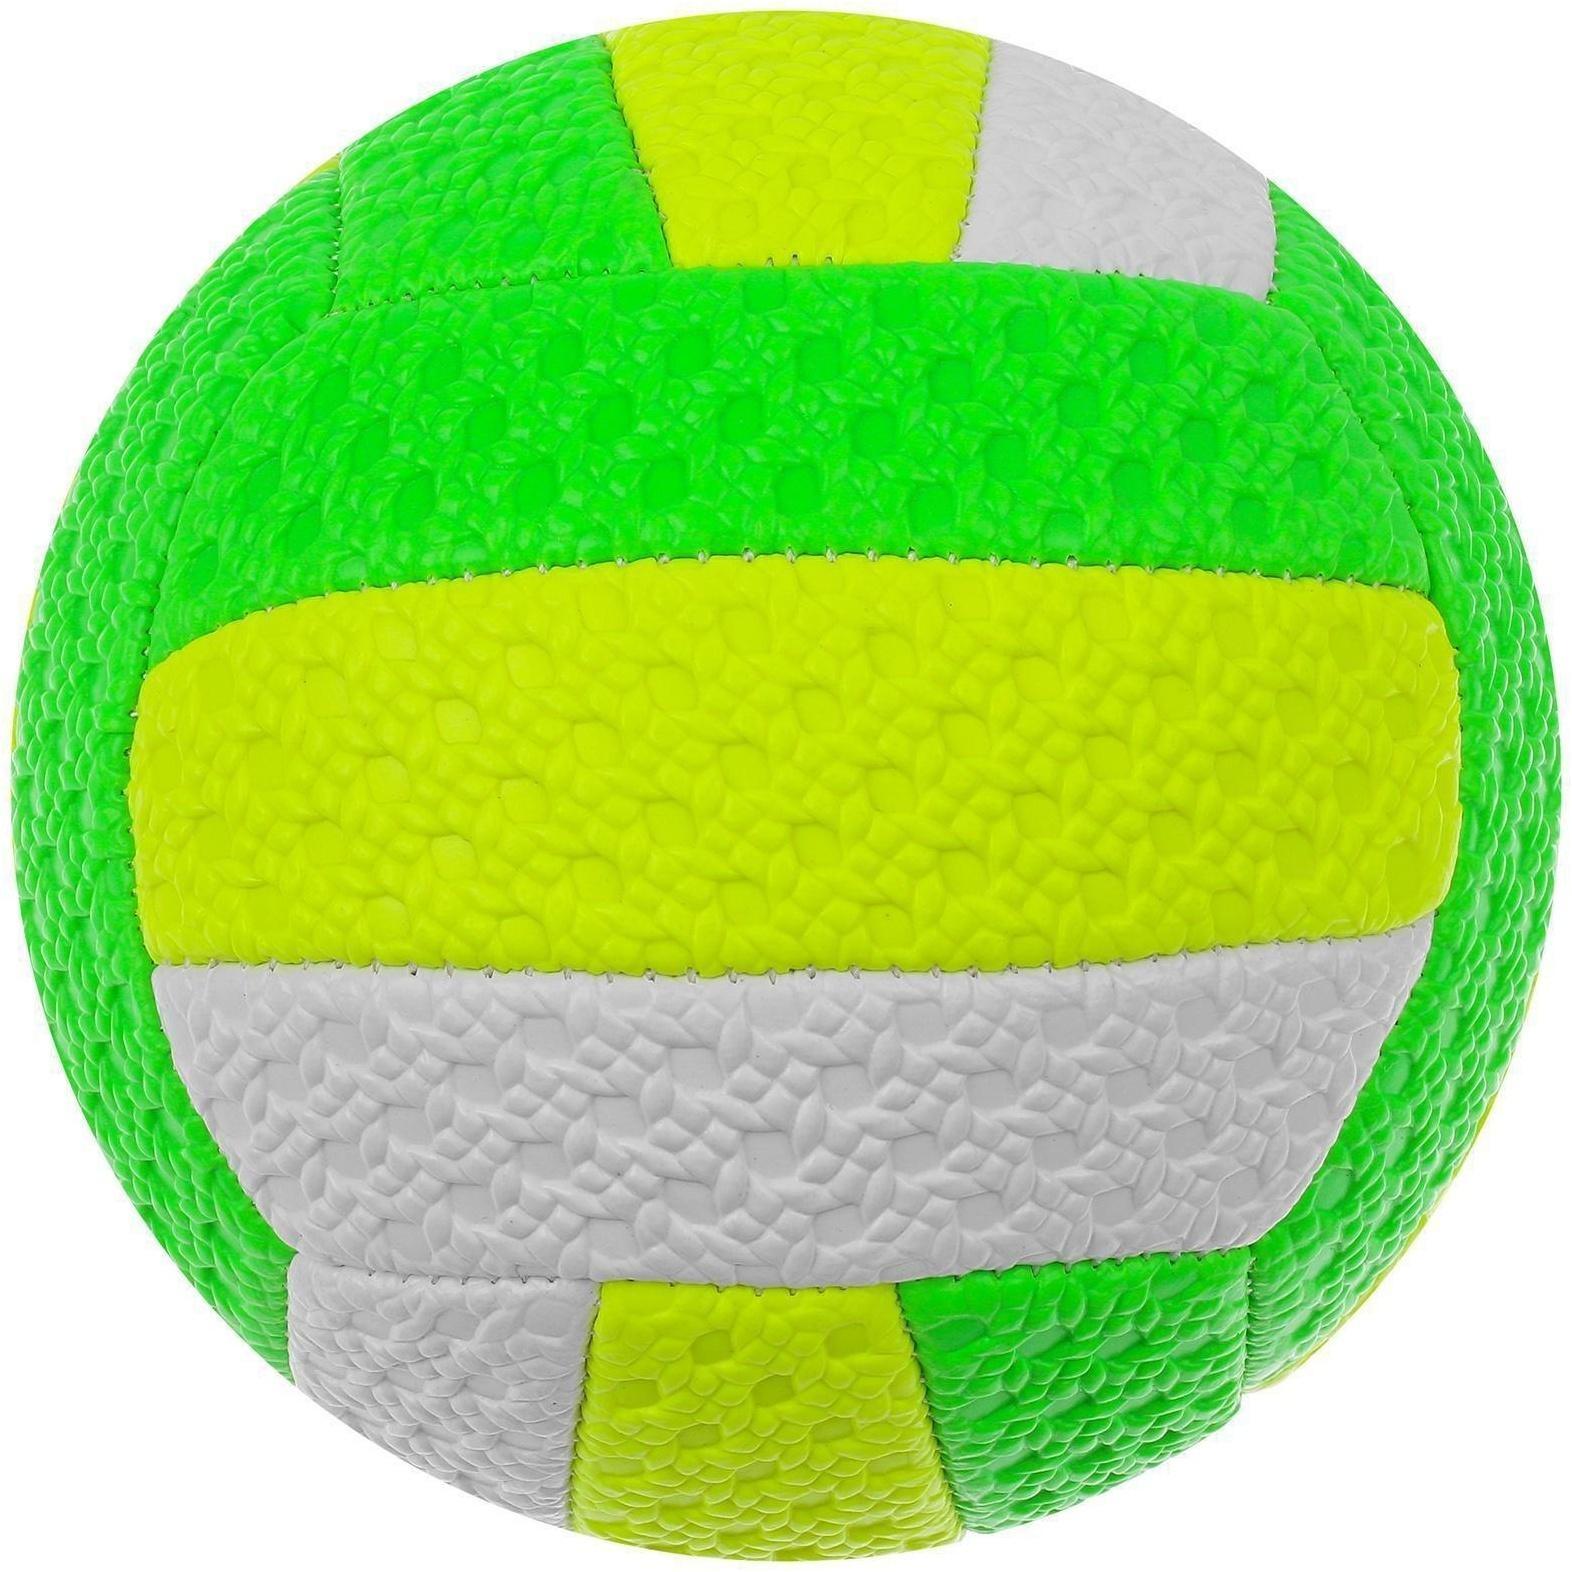 Мяч волейбольный пляжный, ПВХ, машинная сшивка, 18 панелей, размер 2, цвета микс